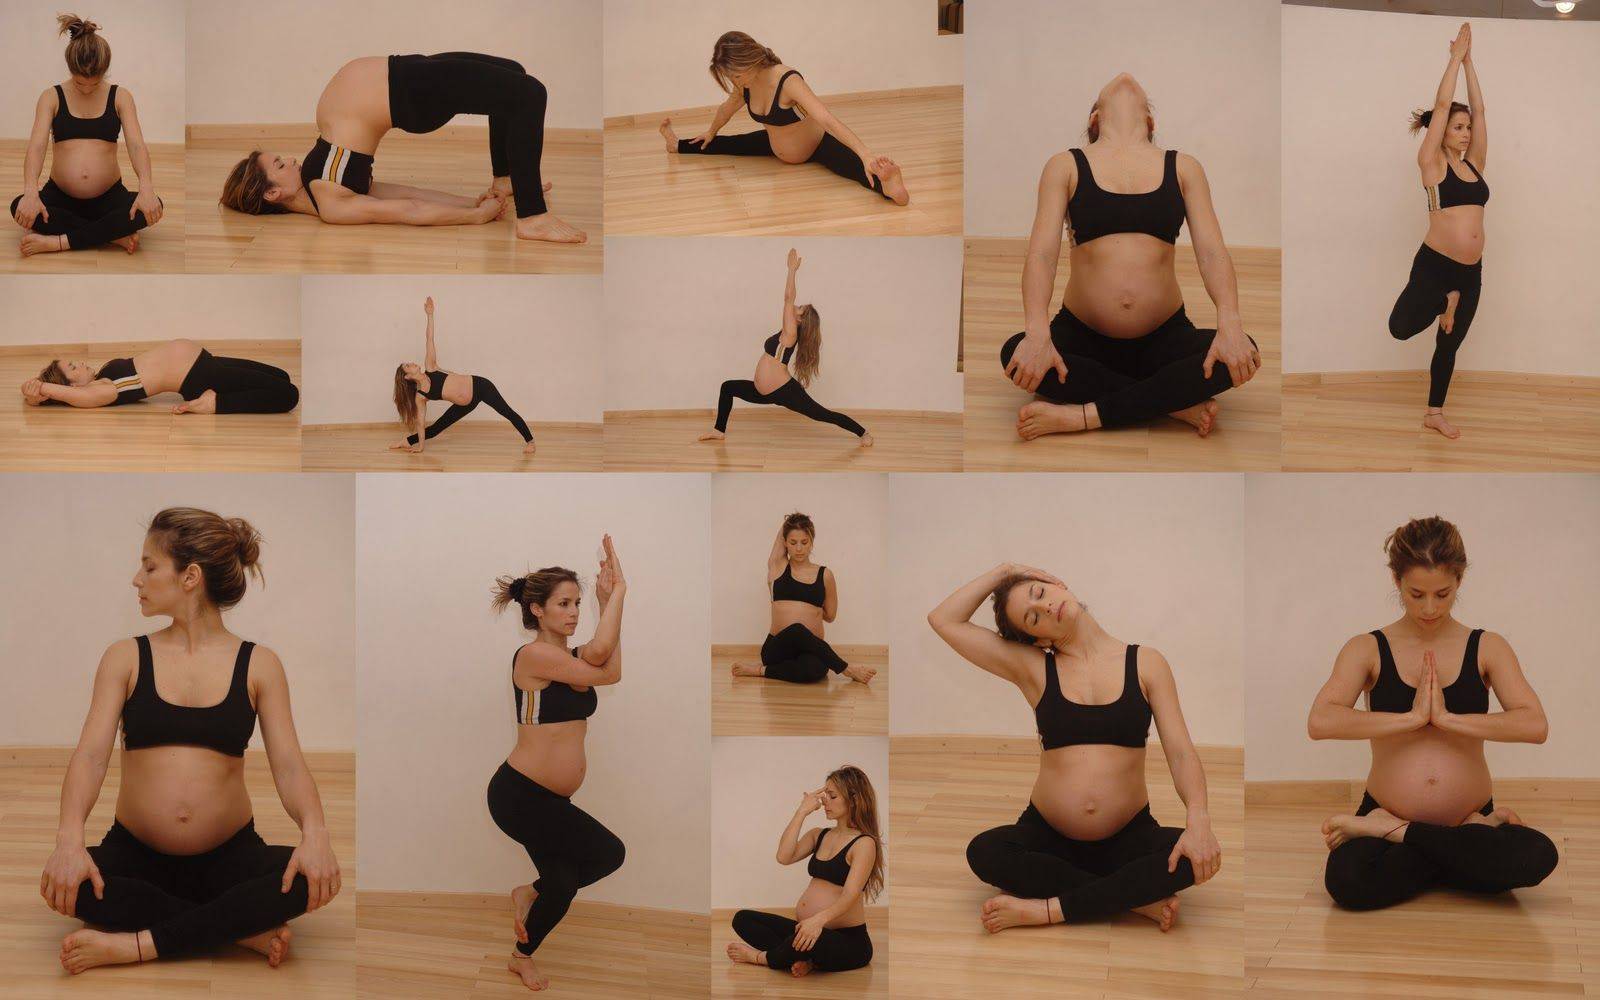 Йога при беременности (на 1, 2 или 3 триместре): можно ли заниматься, польза, упражнения и другие особенности + видео